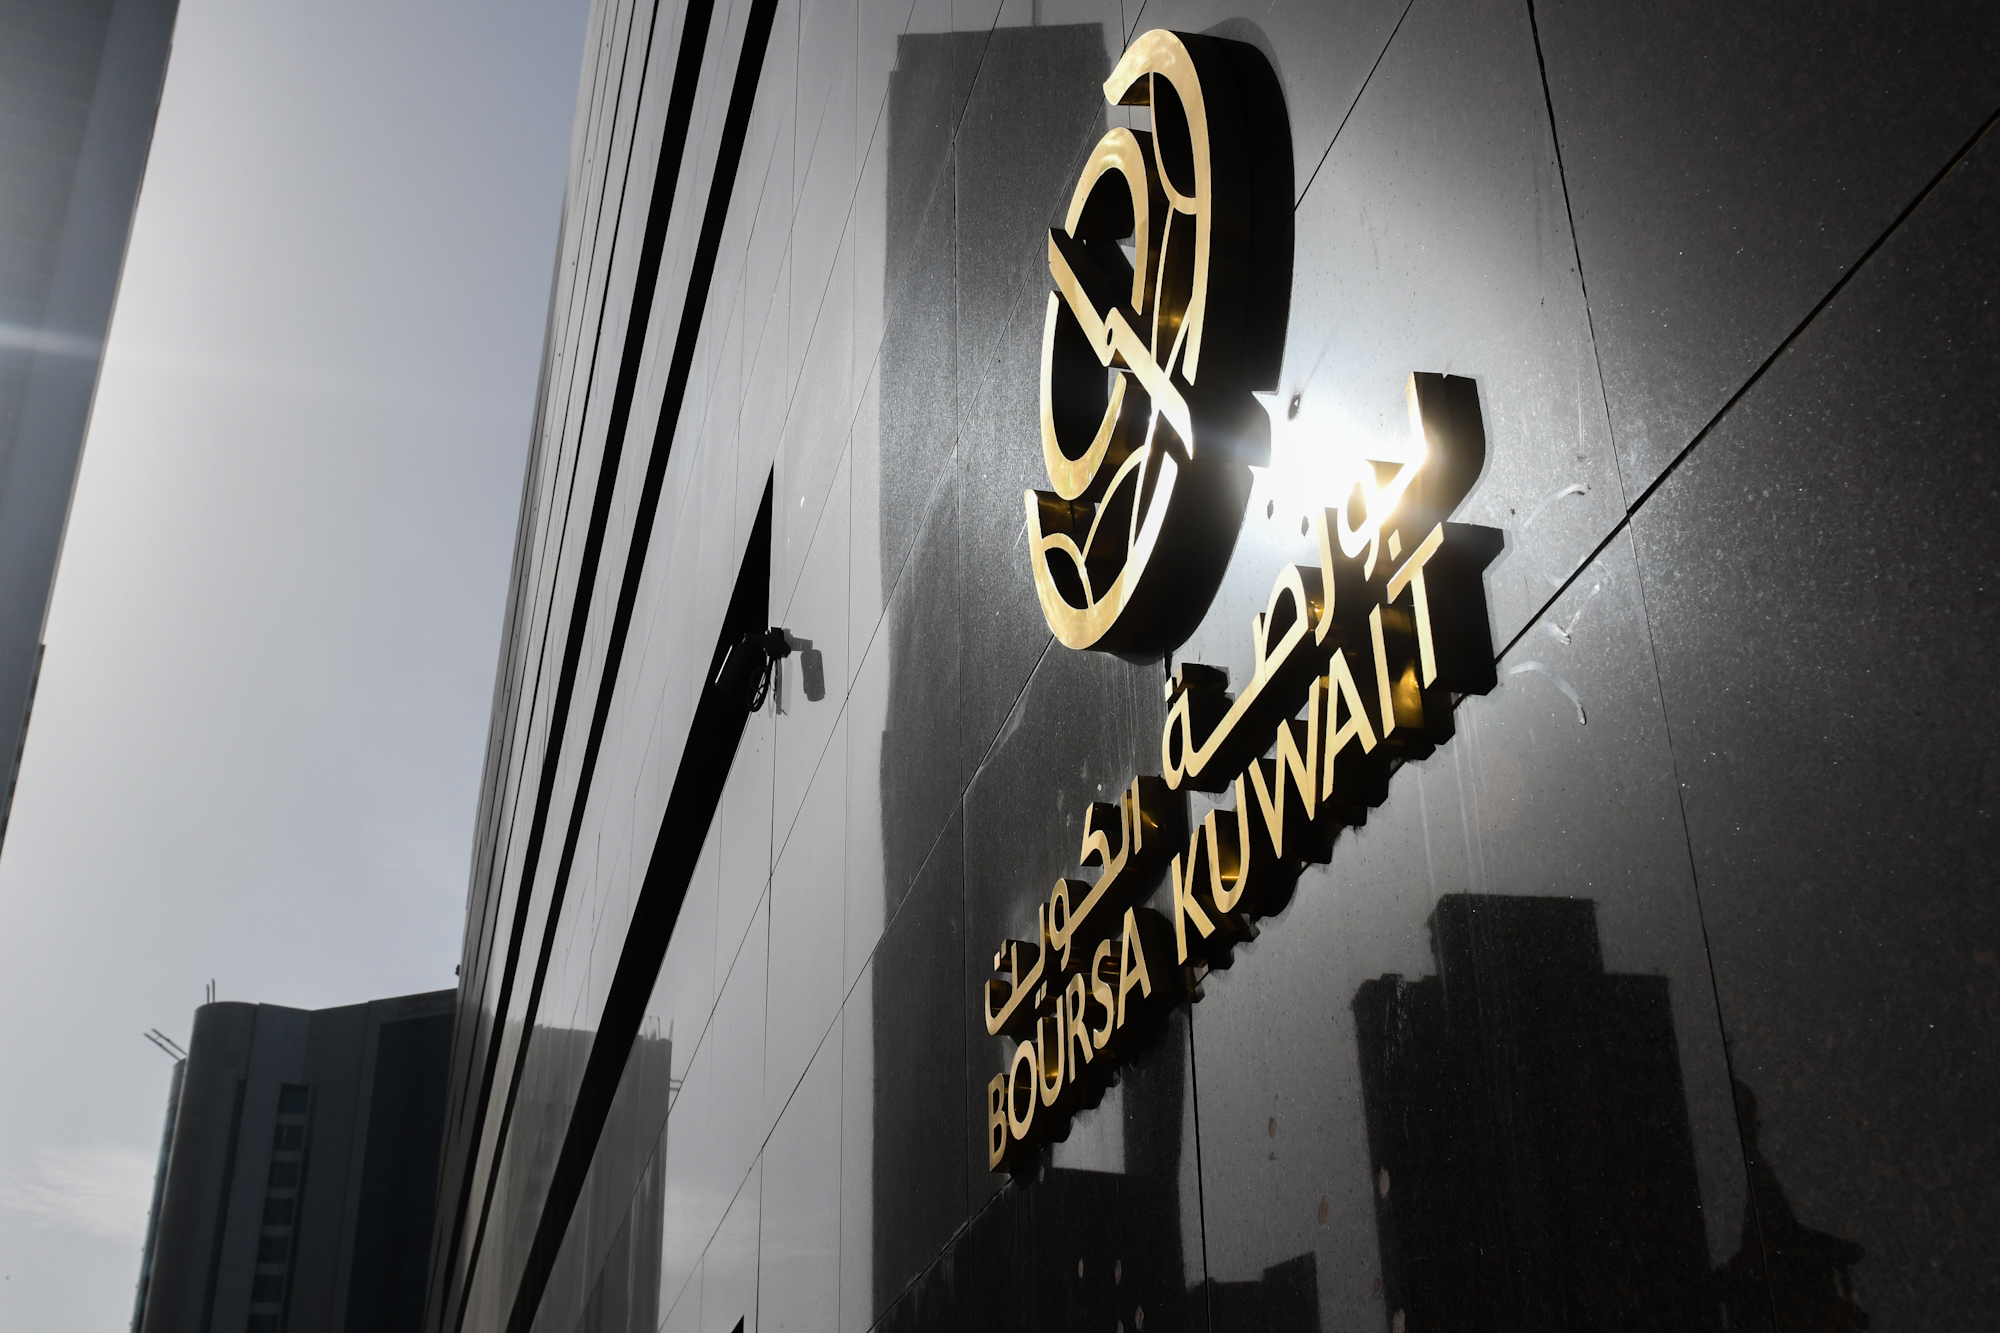 بورصة الكويت تغلق تعاملاتها على انخفاض مؤشرها العام 19ر50 نقطة ليبلغ 24ر7557 بنسبة 66ر0 في المئة                                                                                                                                                          